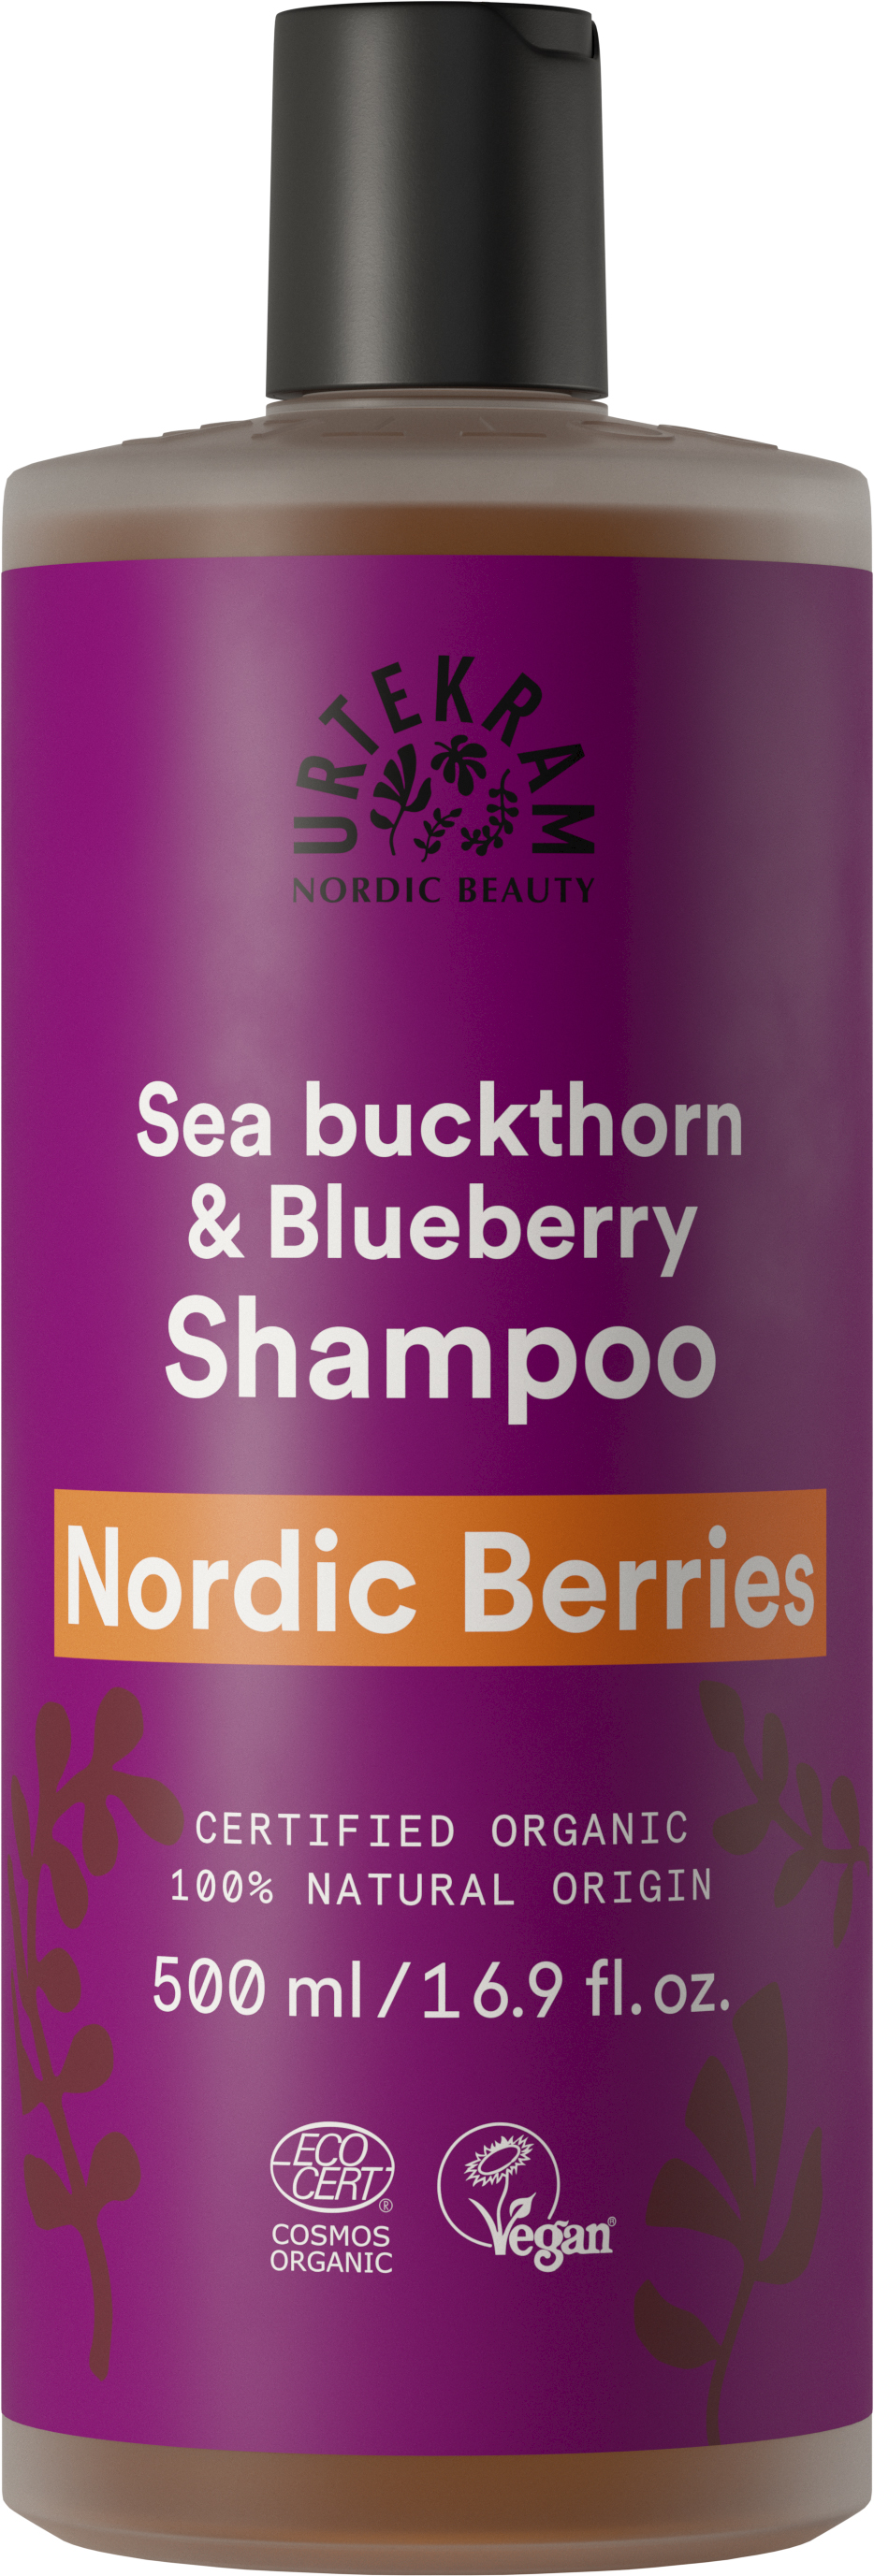 Nordic Berries Urtekram Beauty